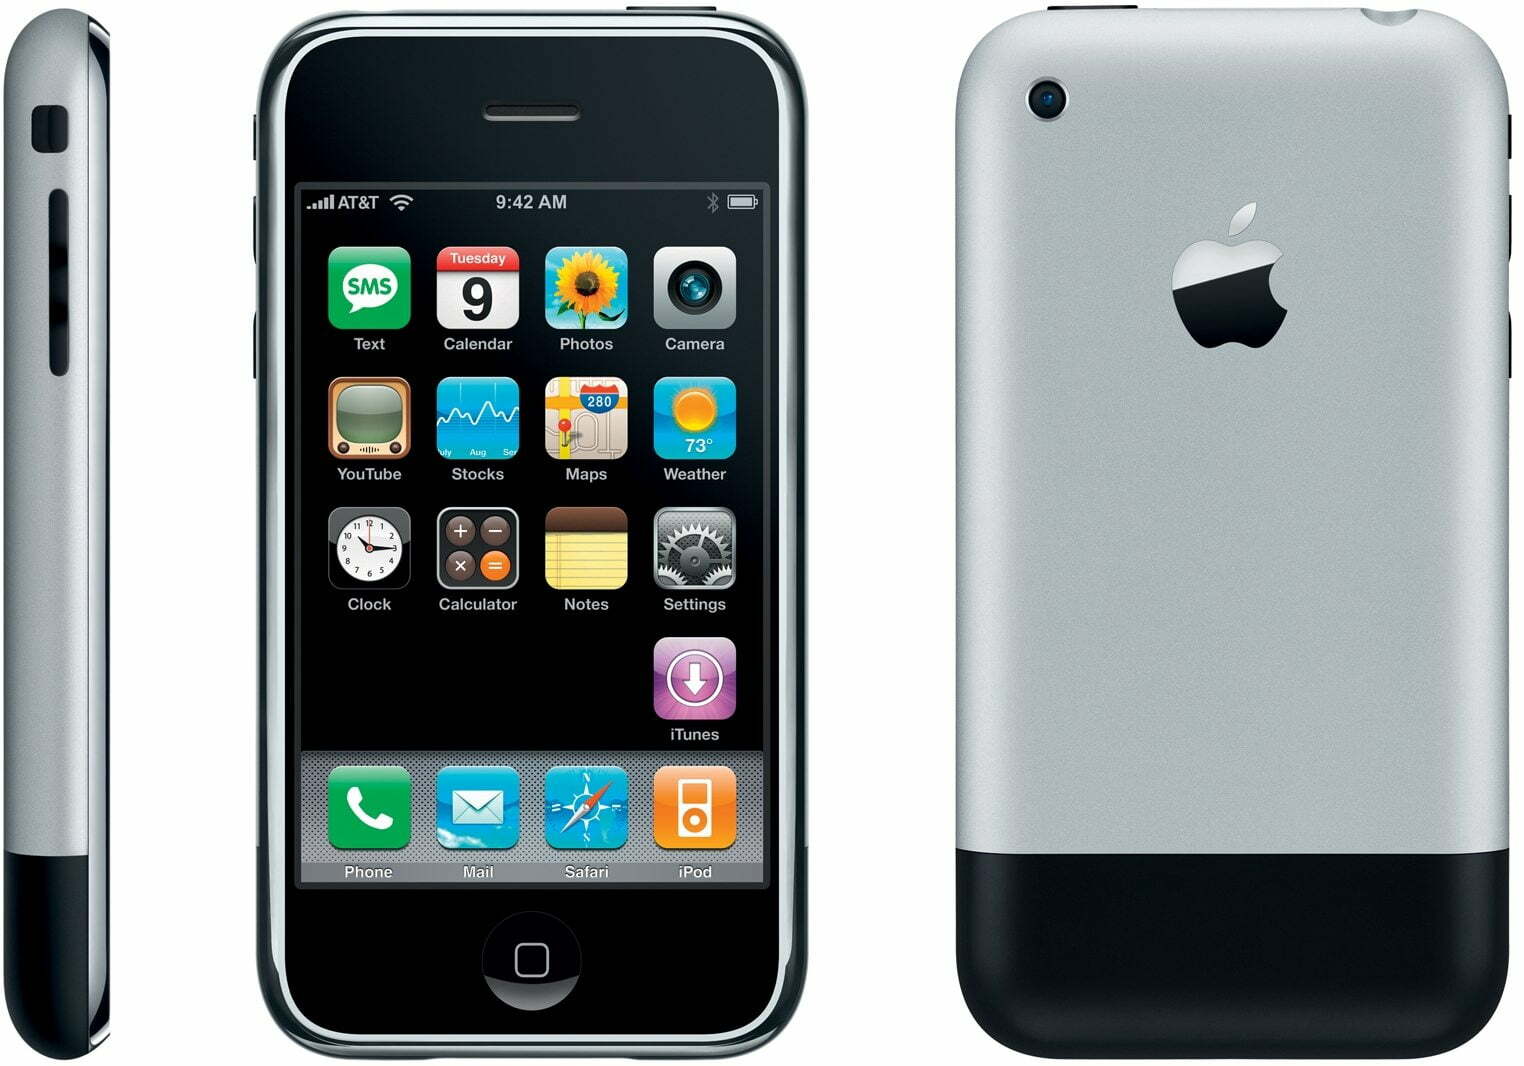 Original iPhone 2G